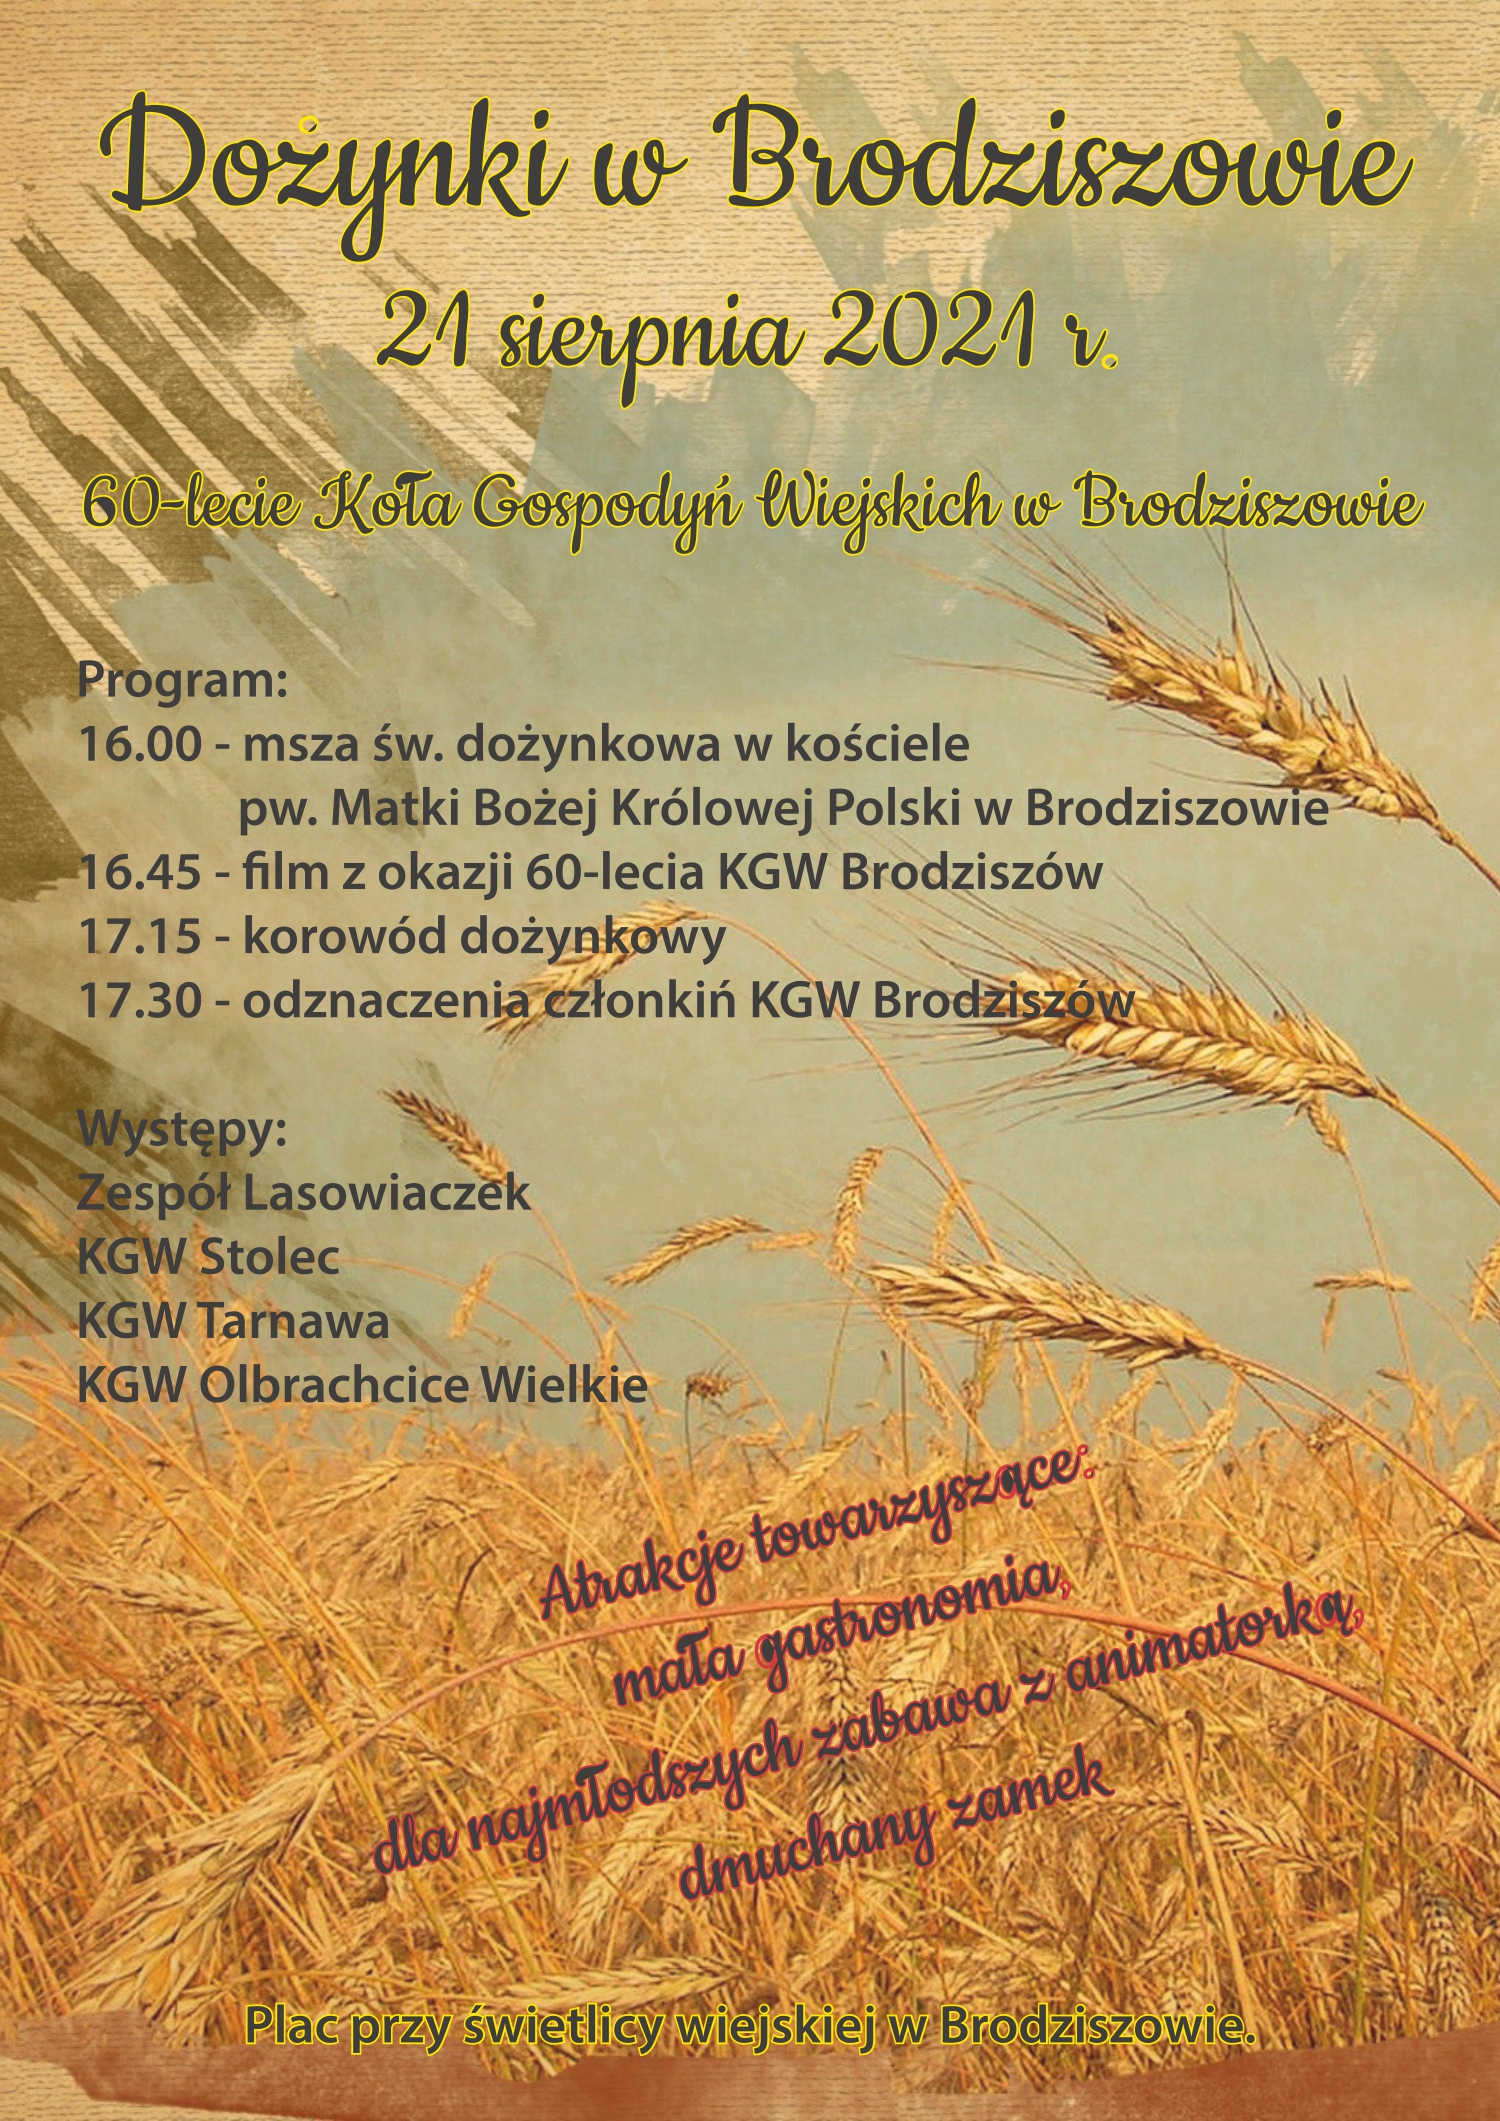 DOŻYNKI W BRODZISZOWIE - 21 sierpnia 2021 - ,,60-lecie Koło Gospodyń Wiejskich w Brodziszowie" PLAN WYDARZEŃ